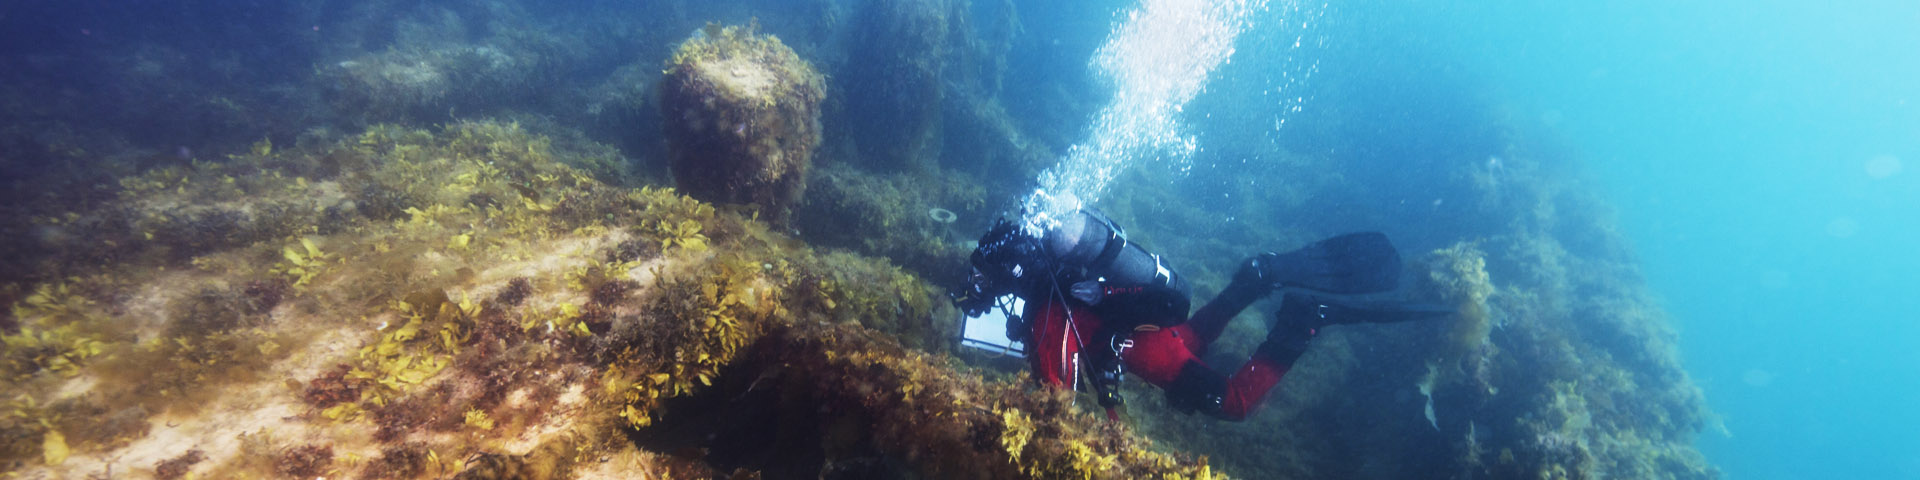 A scuba diver exploring the wreck of HMS Erebus.